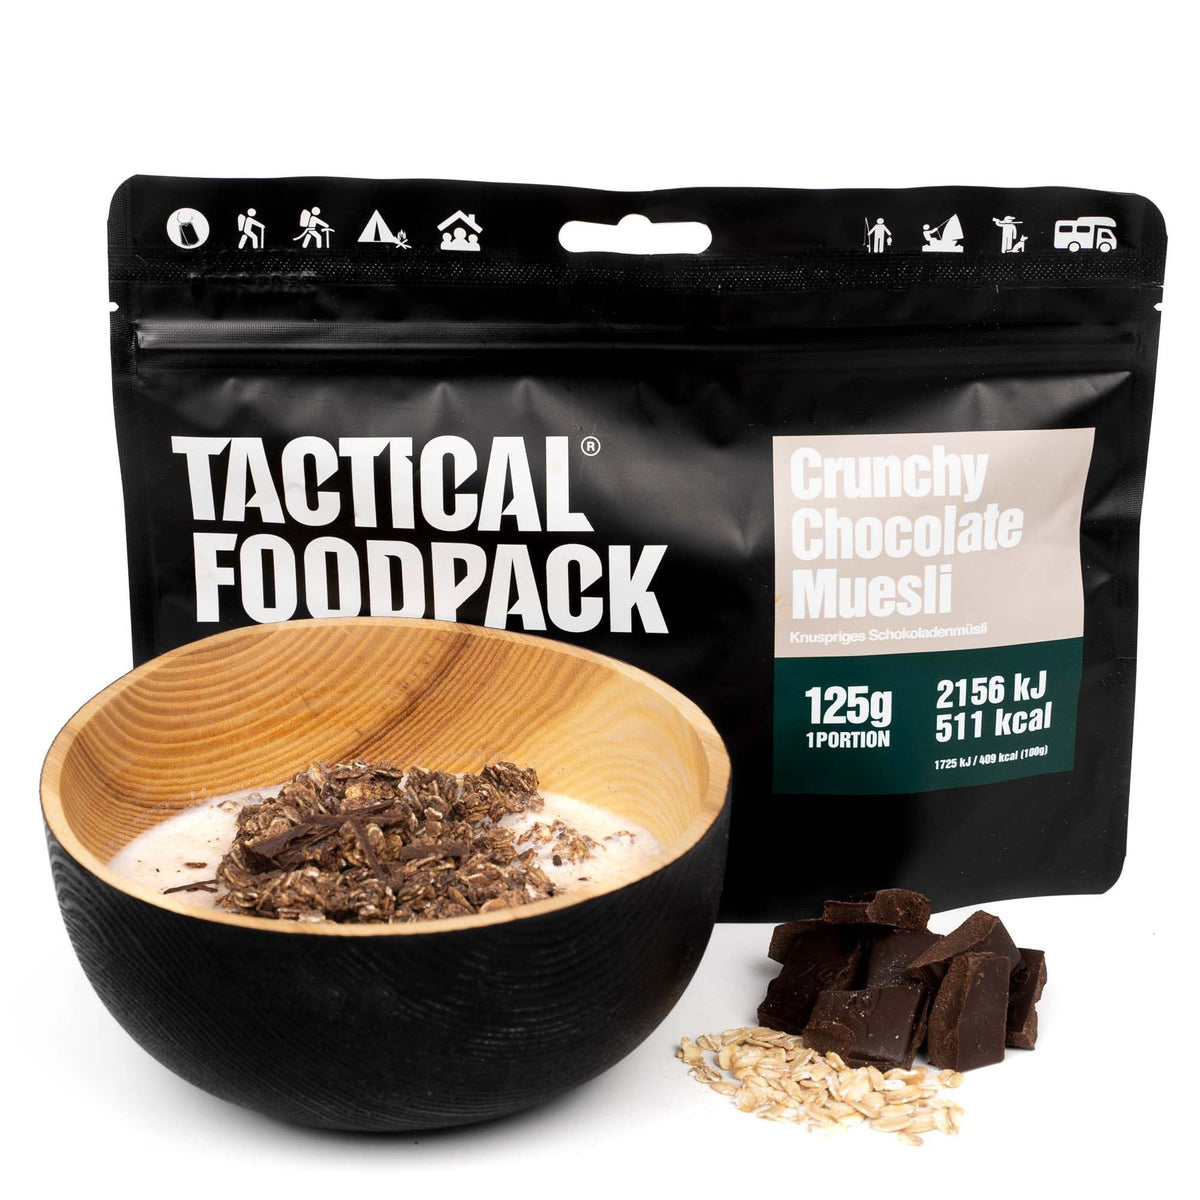 Tactical Foodpack | Crunchy Chocolate Muesli 125g - Musli croccante al cioccolato